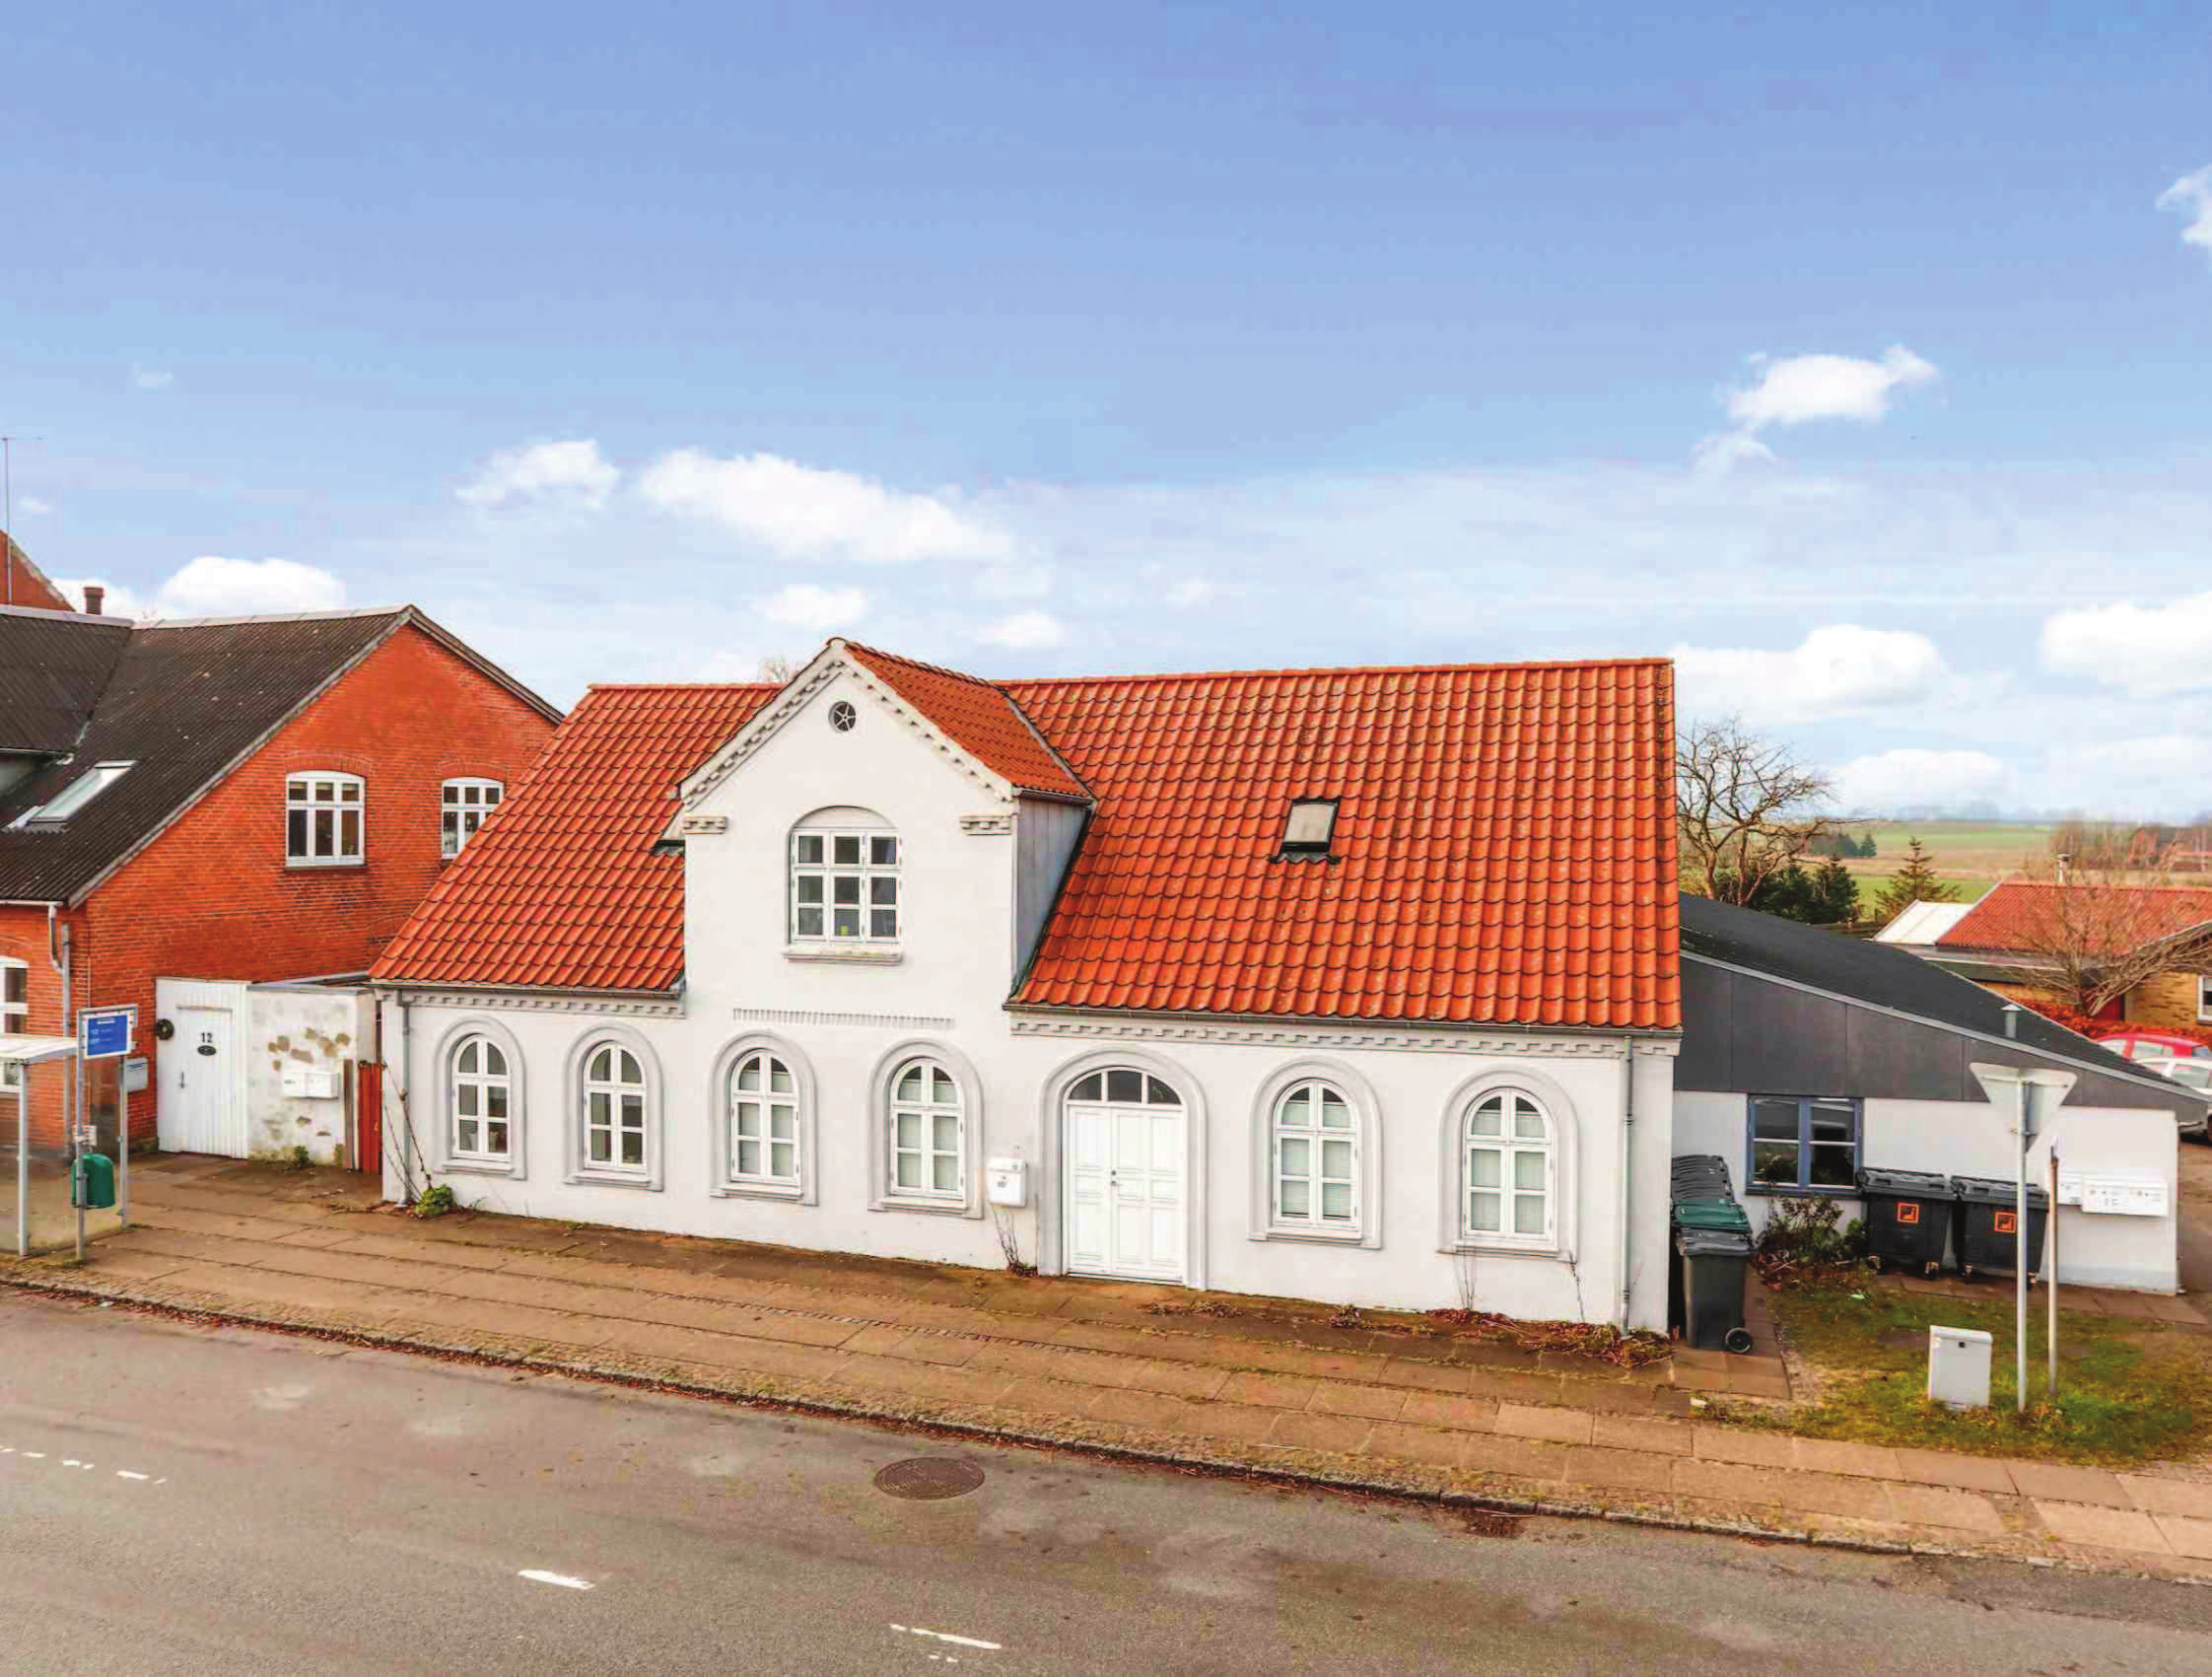 Investeringsejendom med 7 lejligheder Ombygget/nyindrettet i 2003 Sag 20814 TIL SALG Gedved - Egebjergvej 10A-C & Martinsvej 2 A-D Forbygning med 1 lejlighed i stueetage og 1